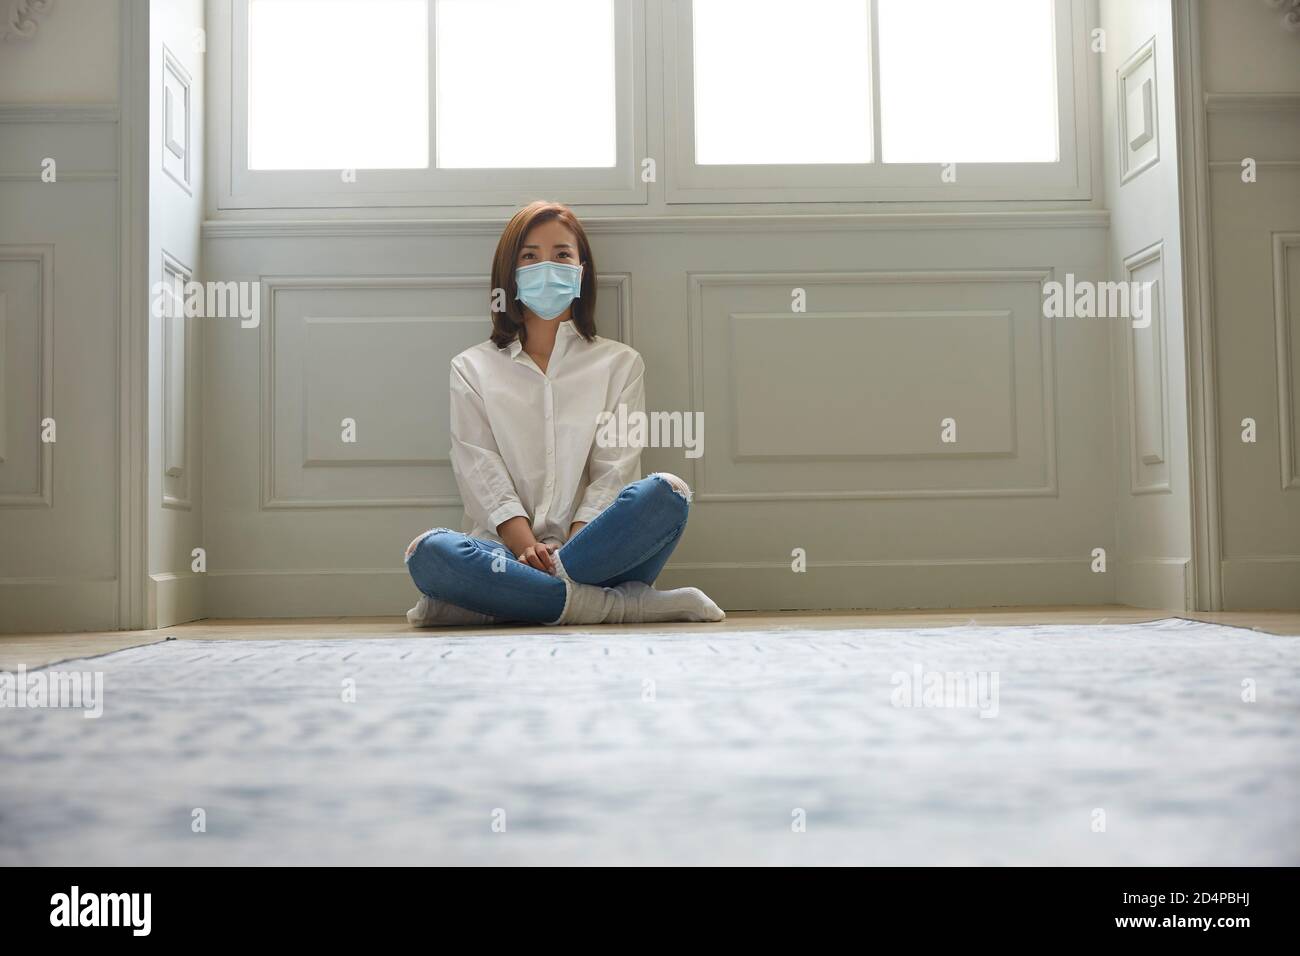 jeune femme asiatique en quarantaine à la maison portant un masque facial assis sur les jambes du sol croisées Banque D'Images